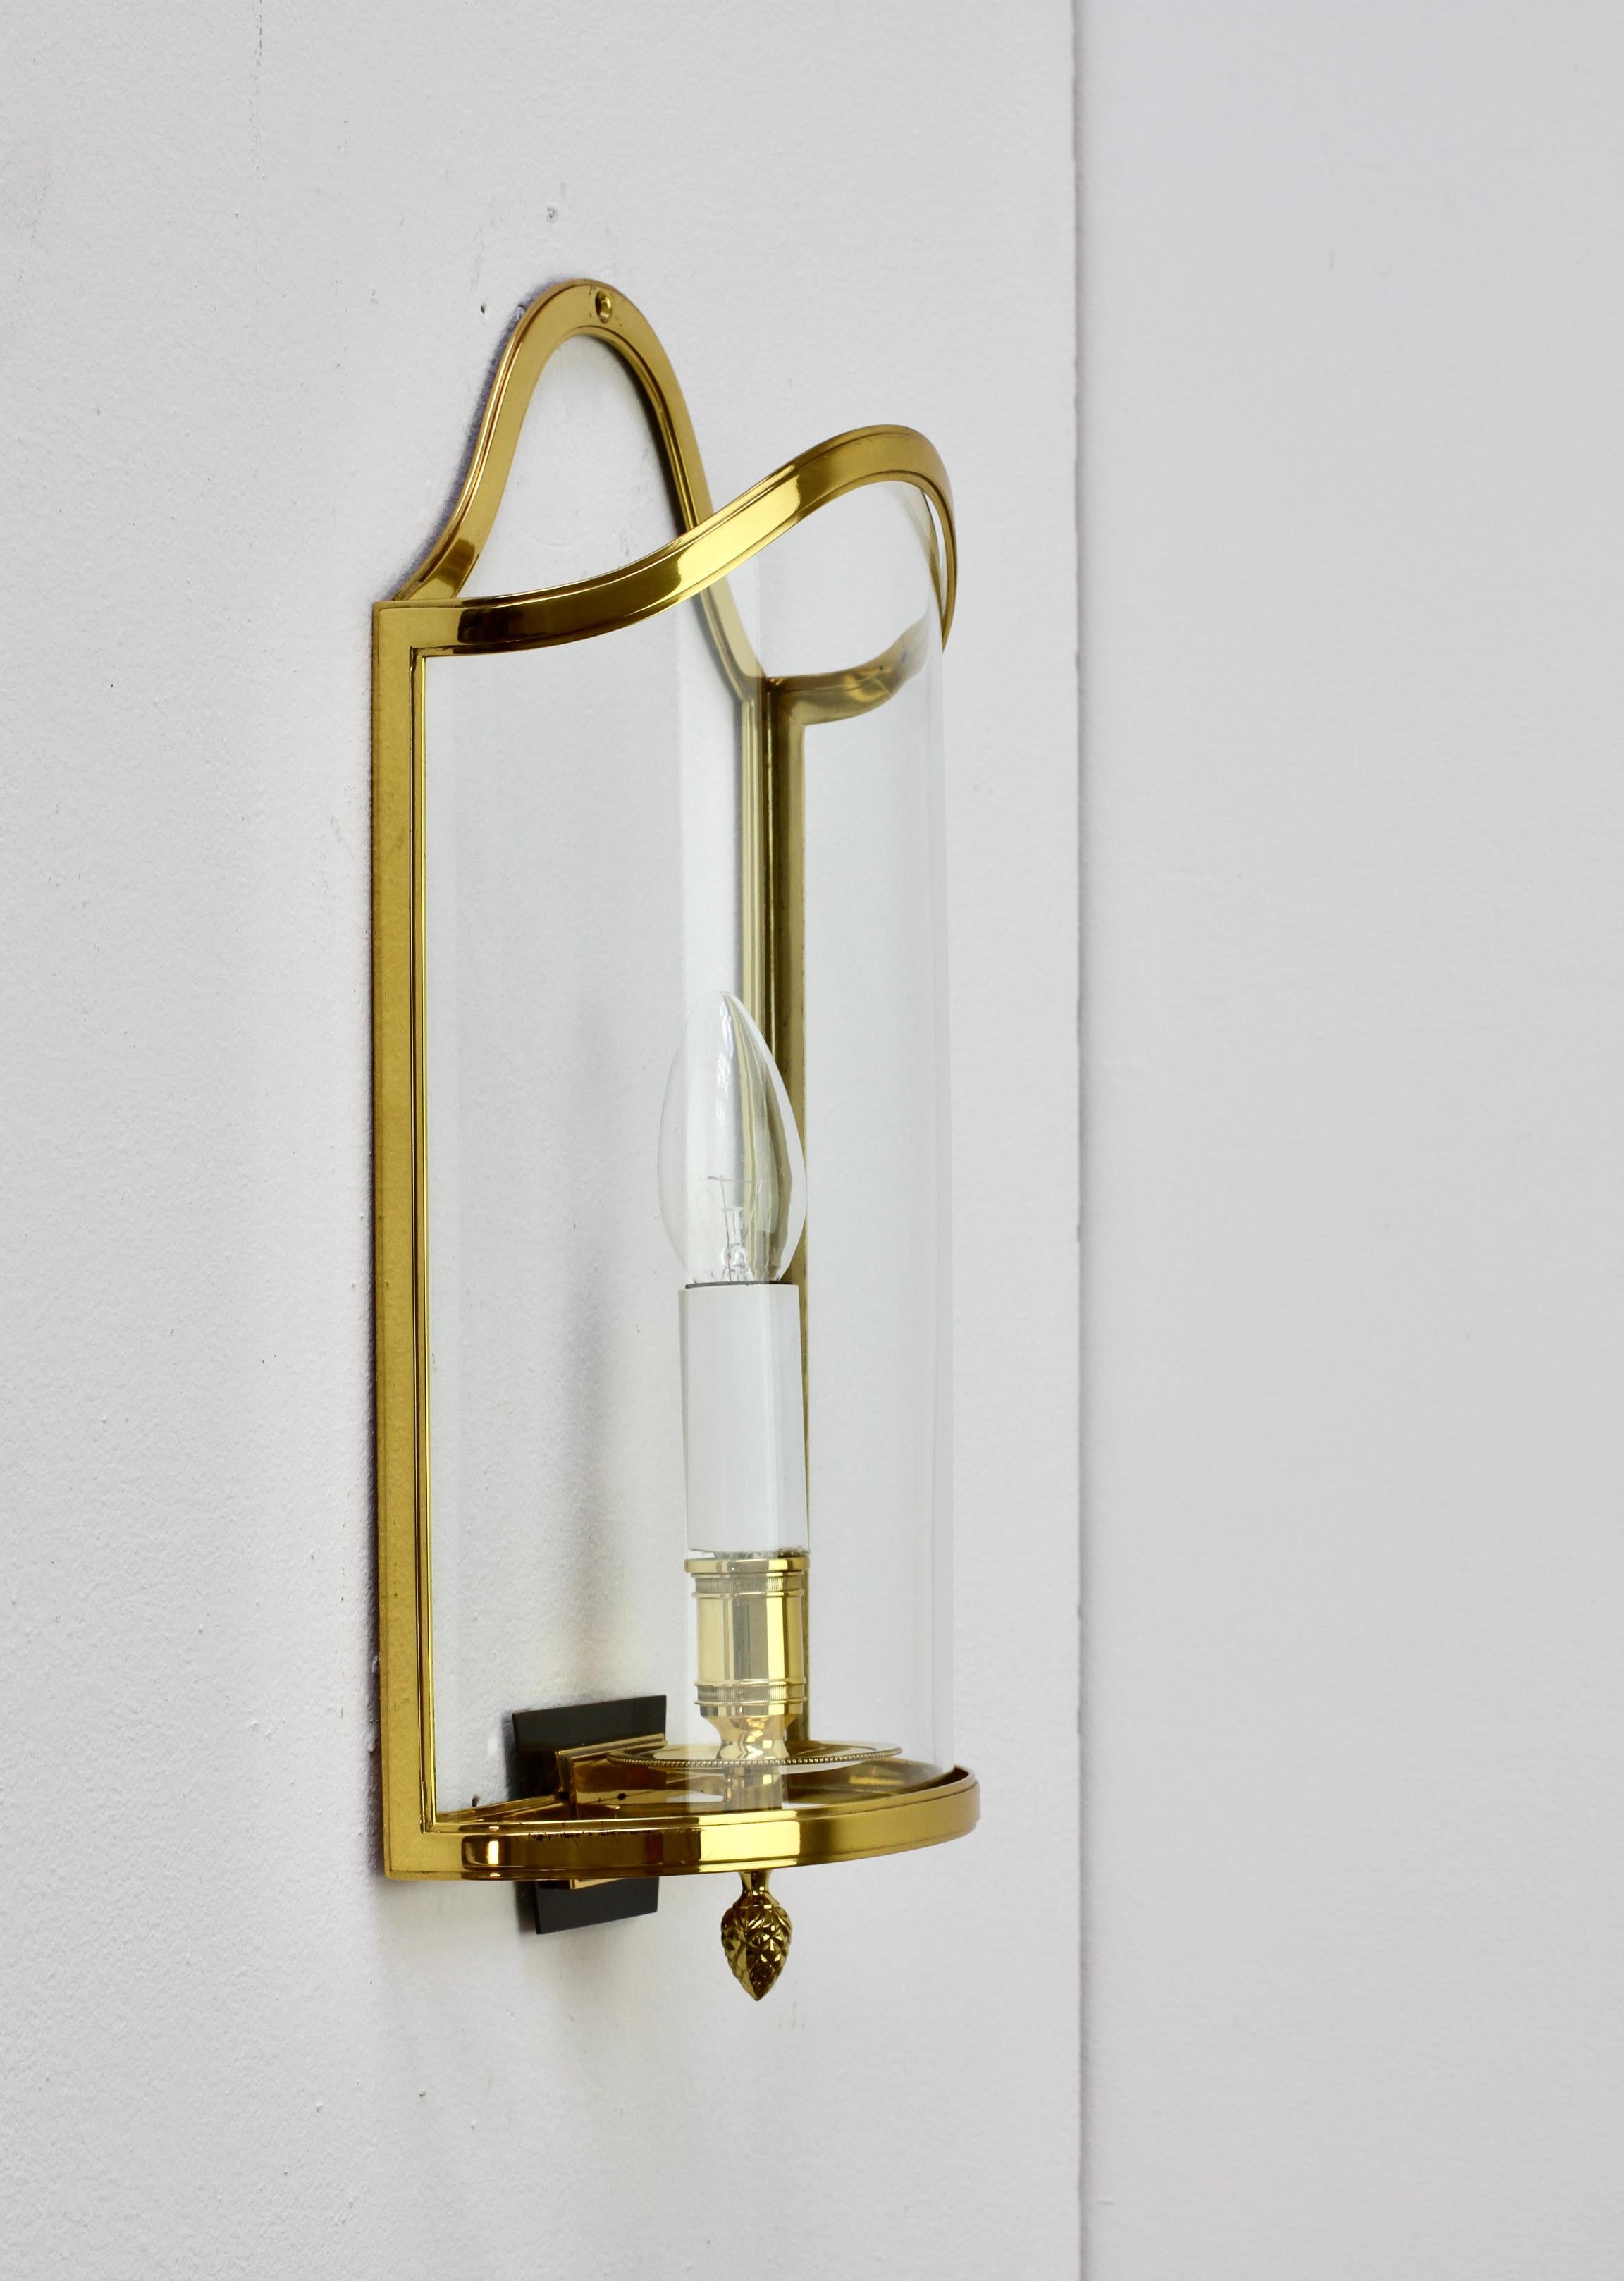 20th Century Pair of Maison Jansen Style Polished Brass Sconces by Vereinigte Werkstätten For Sale